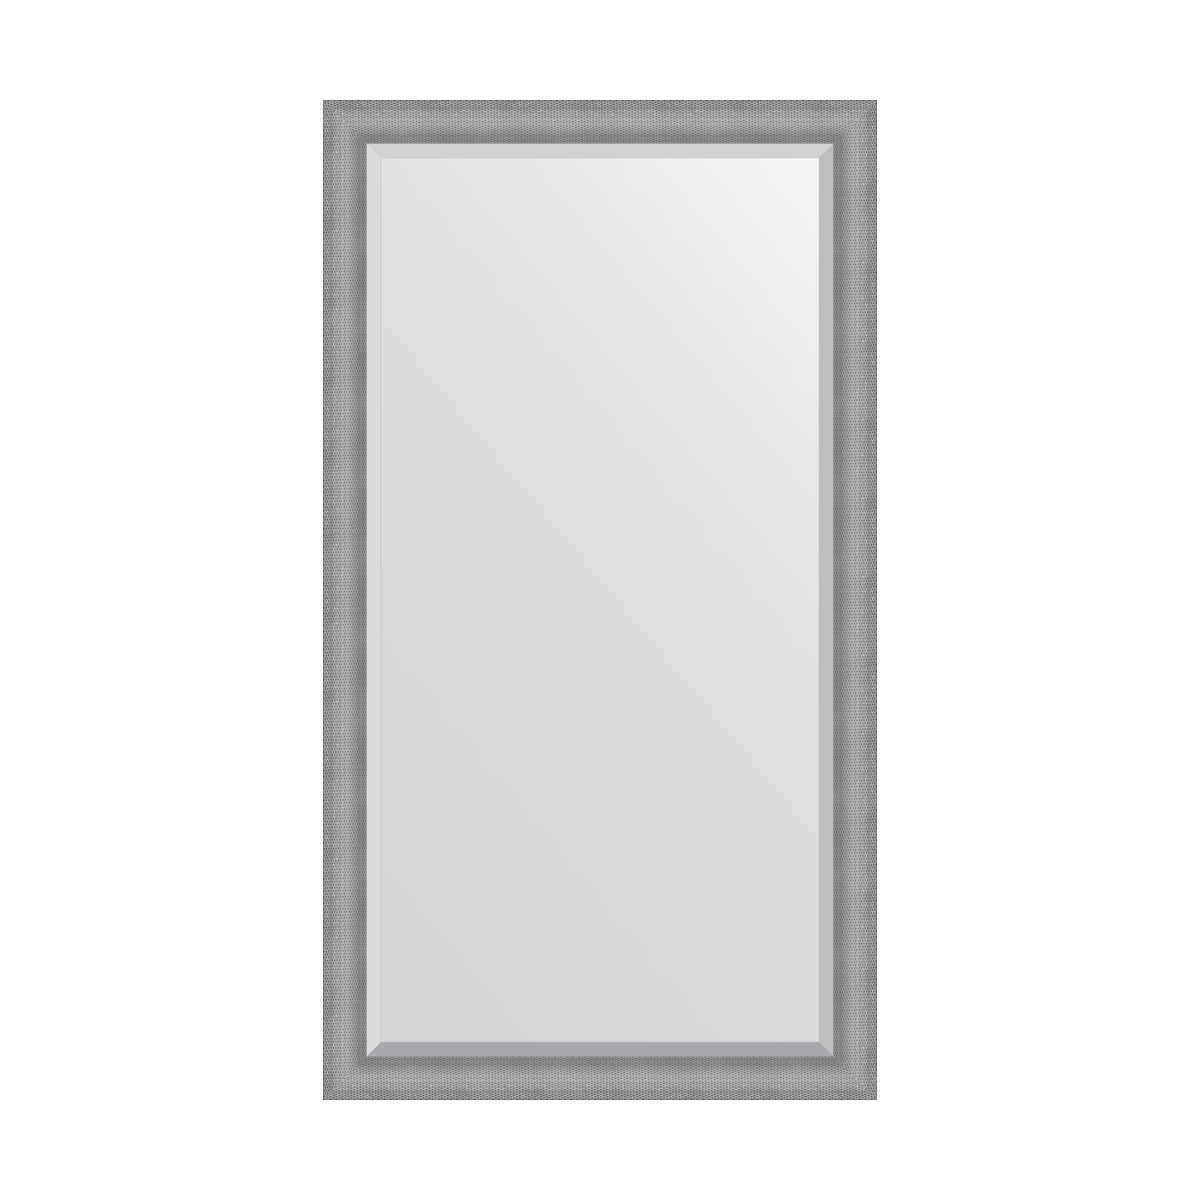 Зеркало напольное с фацетом  в багетной раме Evoform серебряная кольчуга 88 мм 112x202 см зеркало напольное с гравировкой в багетной раме evoform медная кольчуга 88 мм 112x202 см